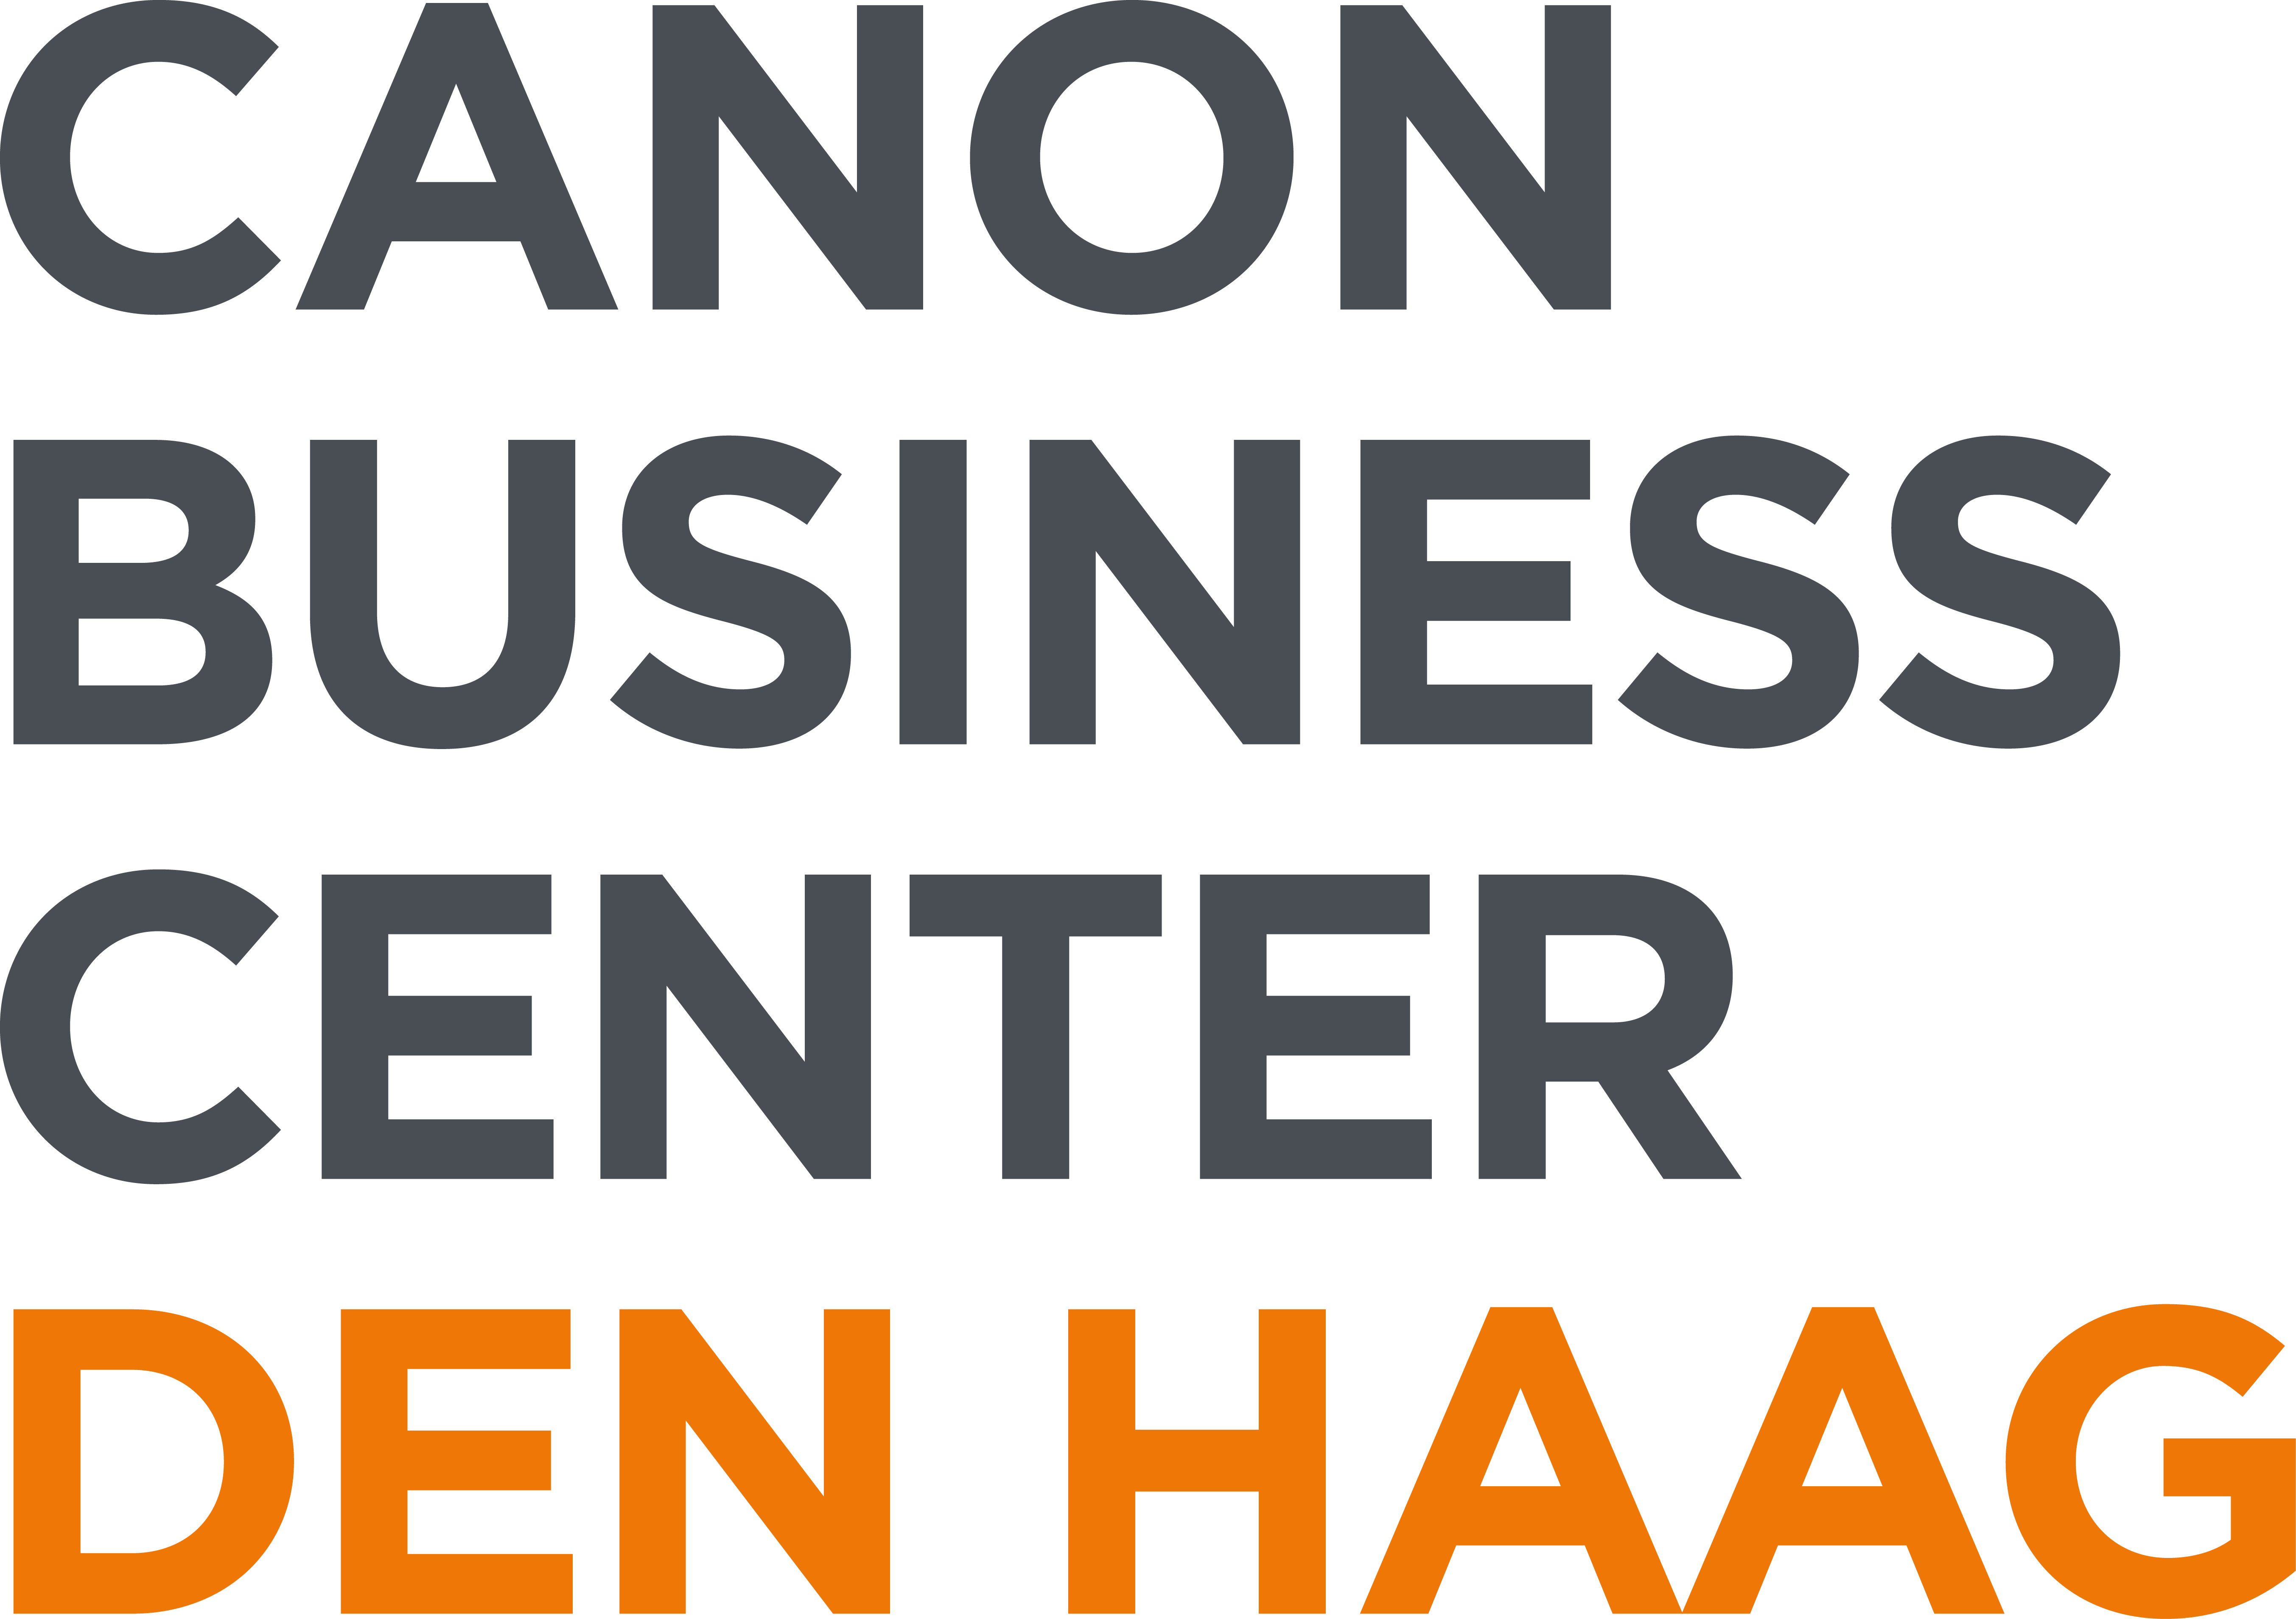 Canon Business Center Nederland